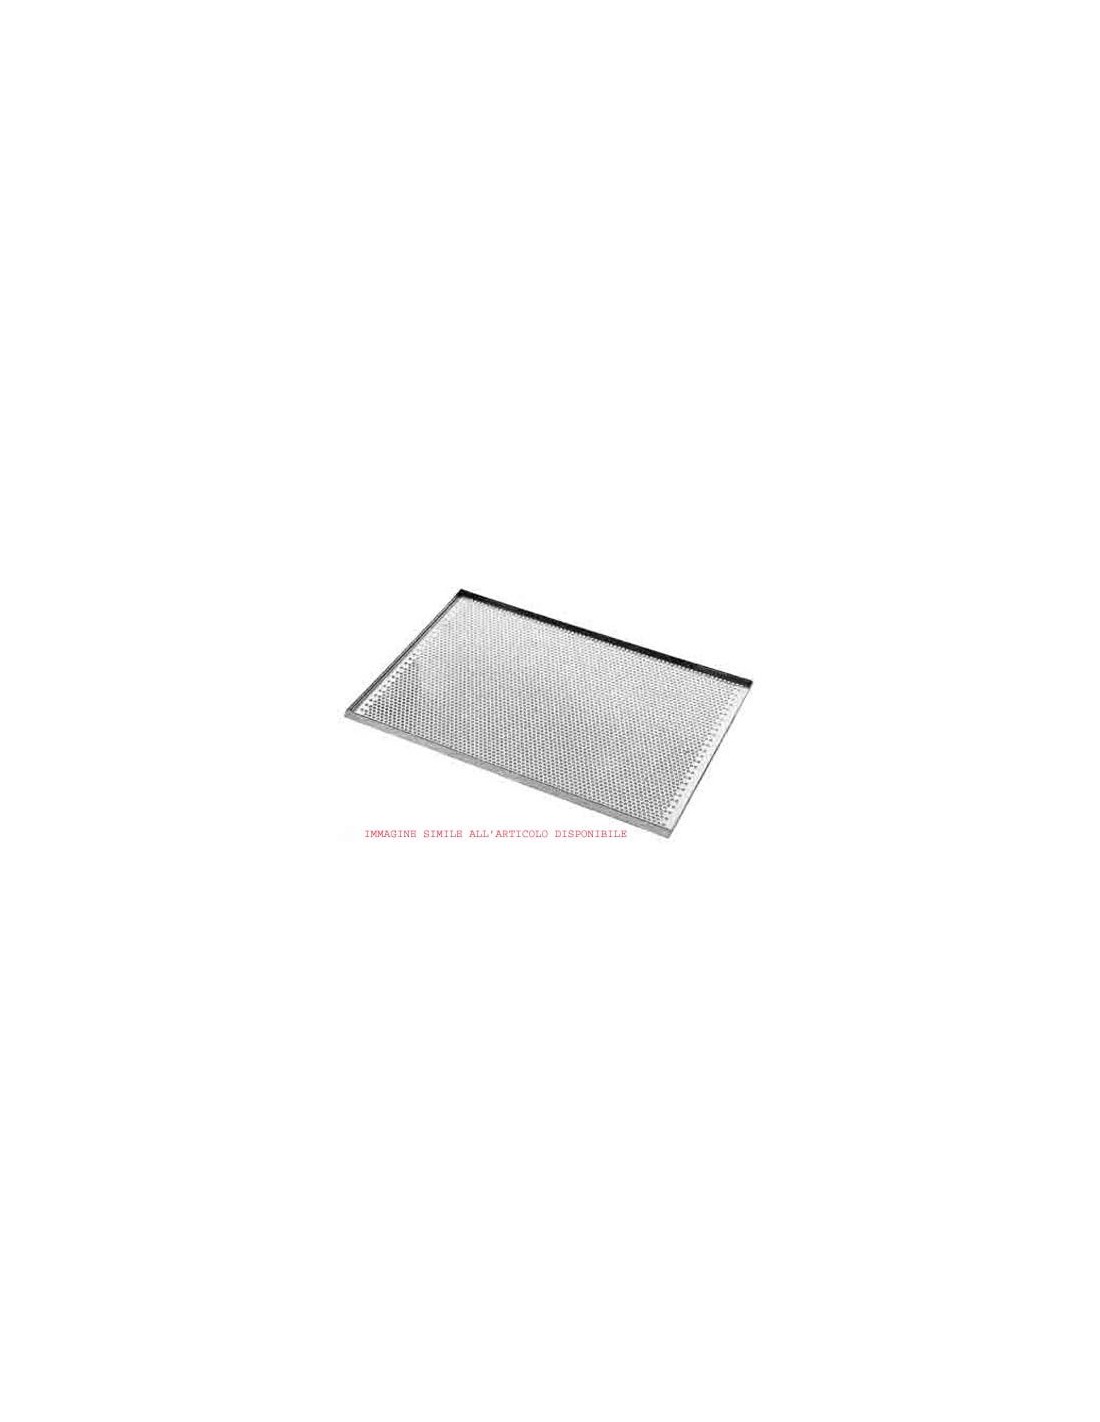 60x40 cm perforated aluminium sheet